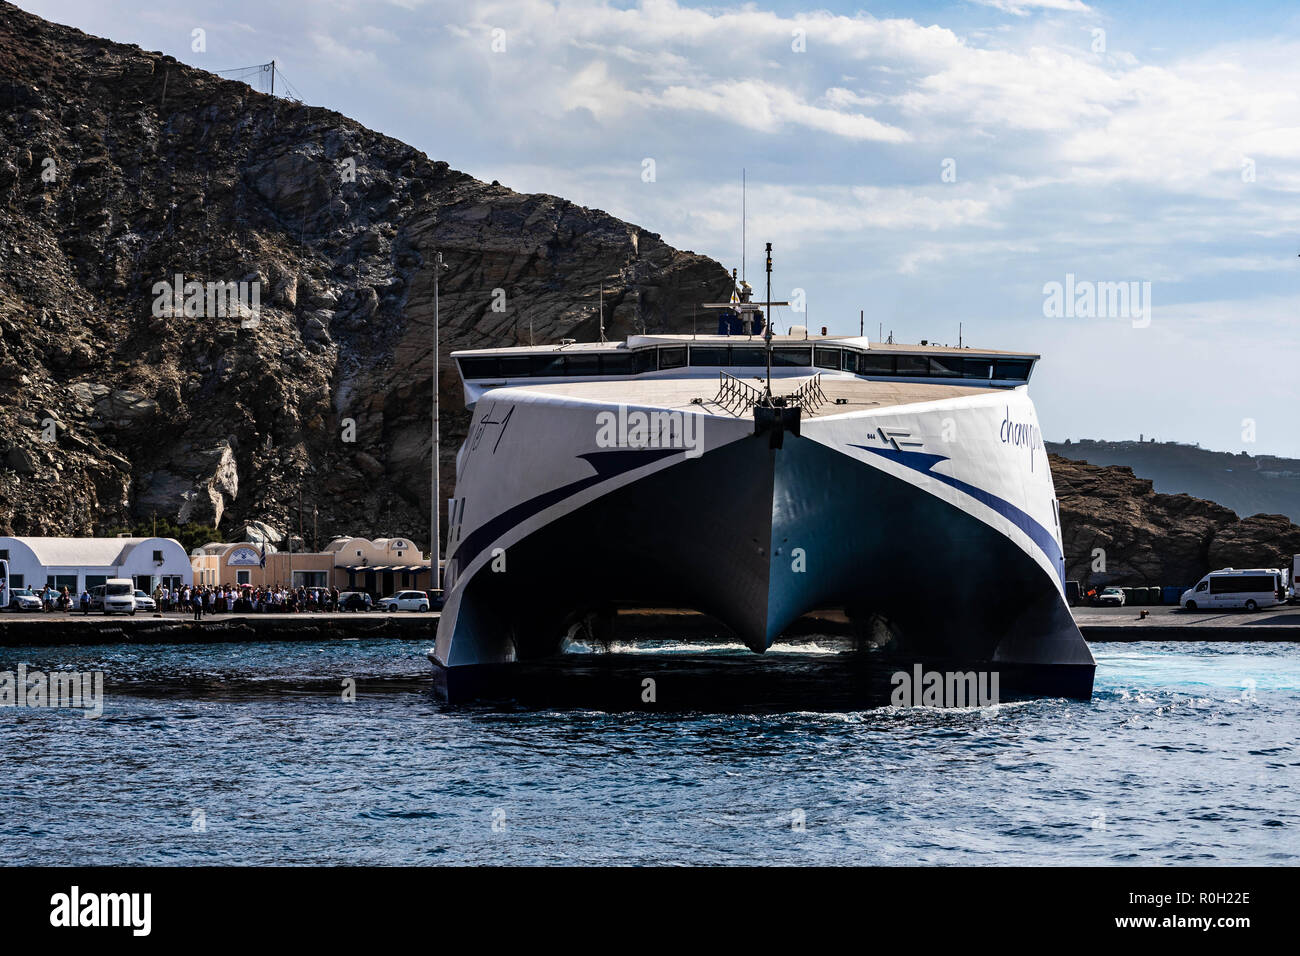 Campione Seajets Jet 1 Catamarano ormeggiata nel porto di Athinios (Αθηνιός) il principale porto di Santorini, situato a circa 10 km a sud della pro capite Foto Stock